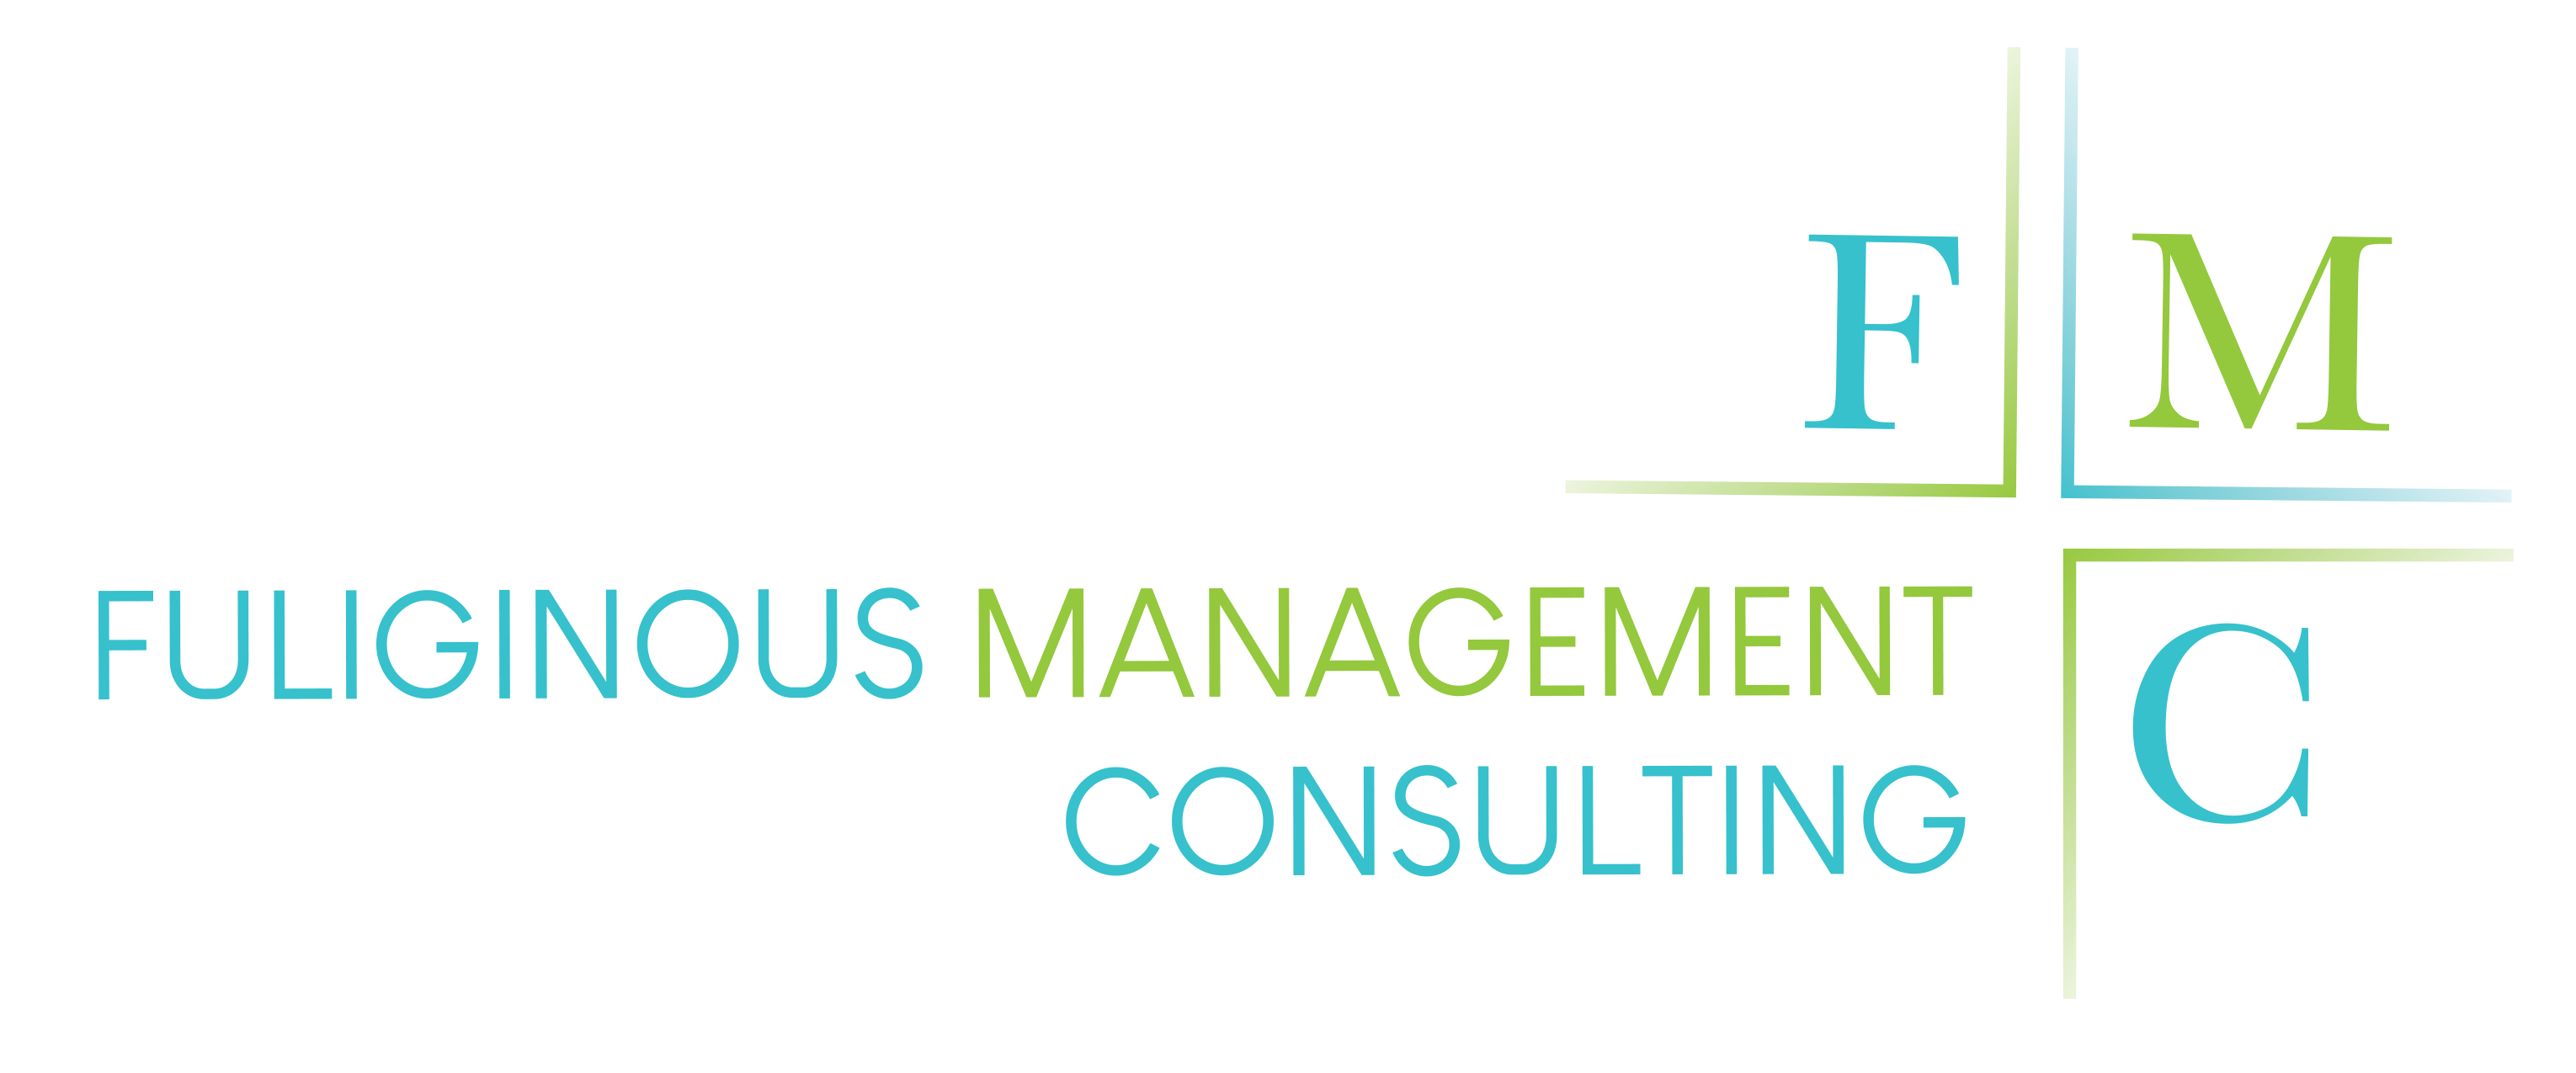 Fuliginous Management Consulting